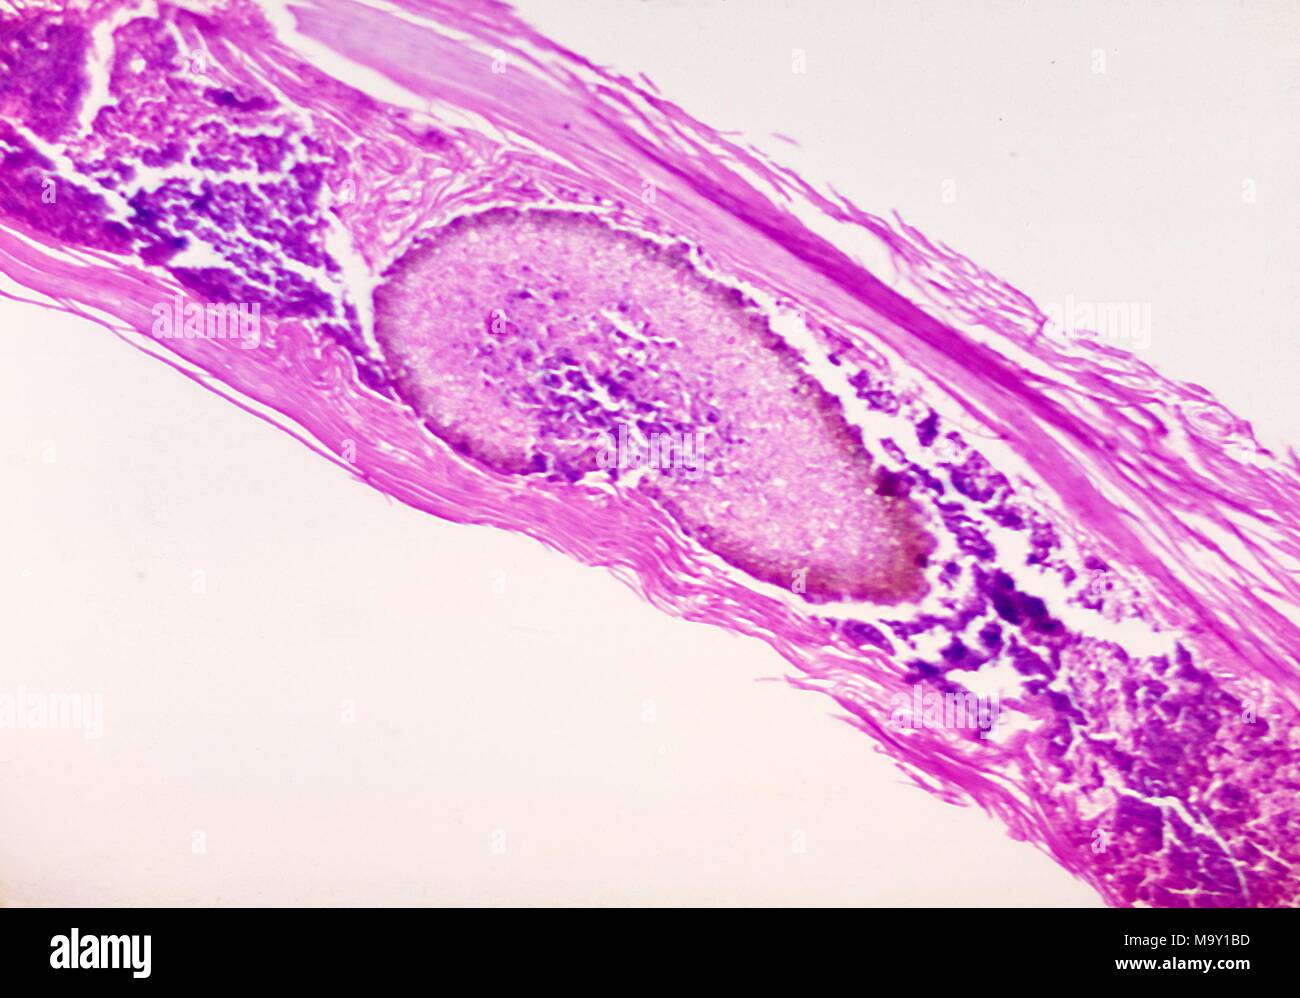 Variazioni istopatologiche associate con Madurella grisea, rivelato nella microfotografia, 1970. Immagine cortesia di centri per il controllo delle malattie (CDC). Immagine cortesia CDC. () Foto Stock